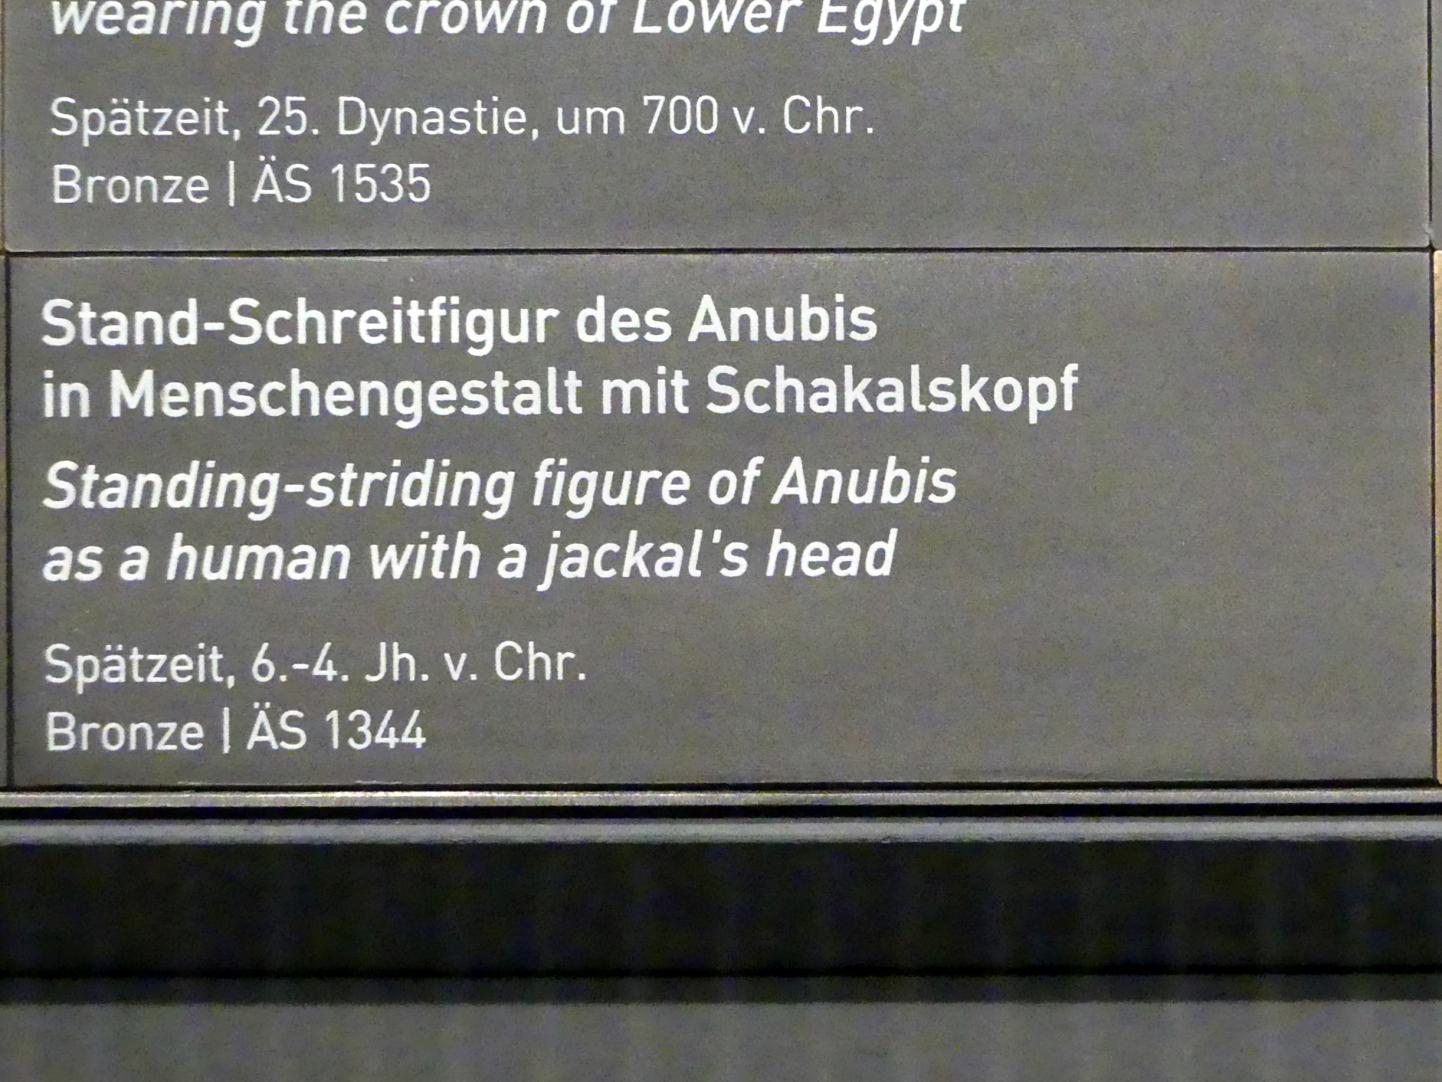 Stand-Schreitfigur des Anubis in Menschengestalt mit Schakalskopf, Spätzeit, 360 - 342 v. Chr., 600 - 300 v. Chr., Bild 3/3